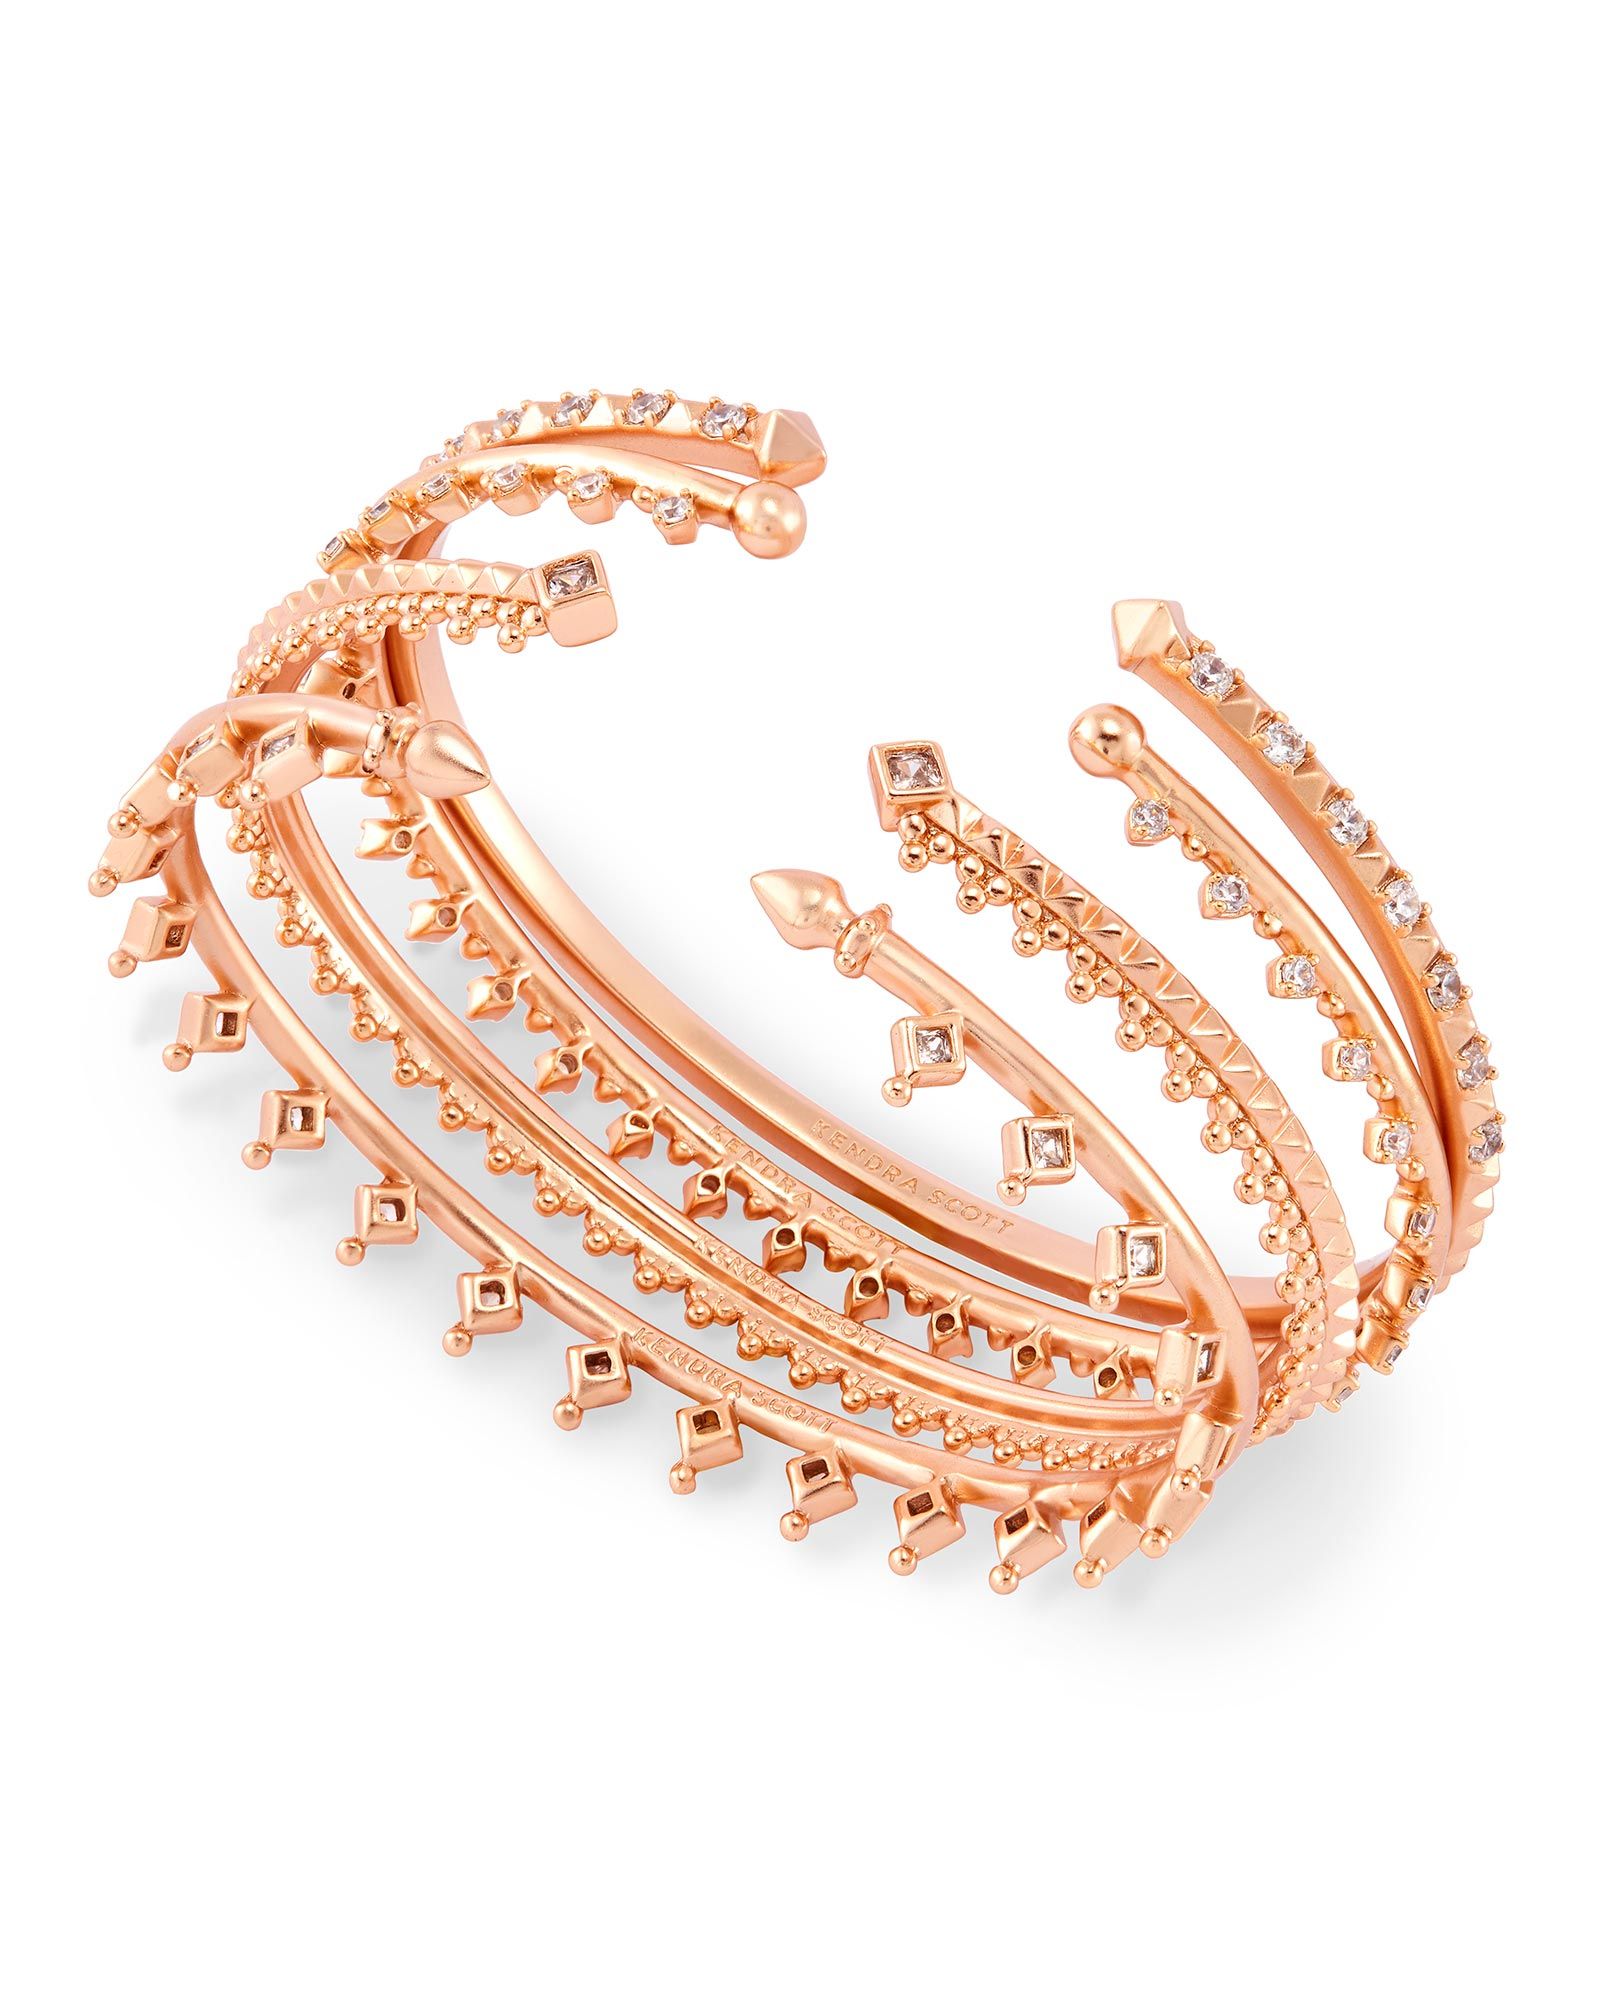 Delphine Pinch Bracelet Set in Rose Gold | Kendra Scott